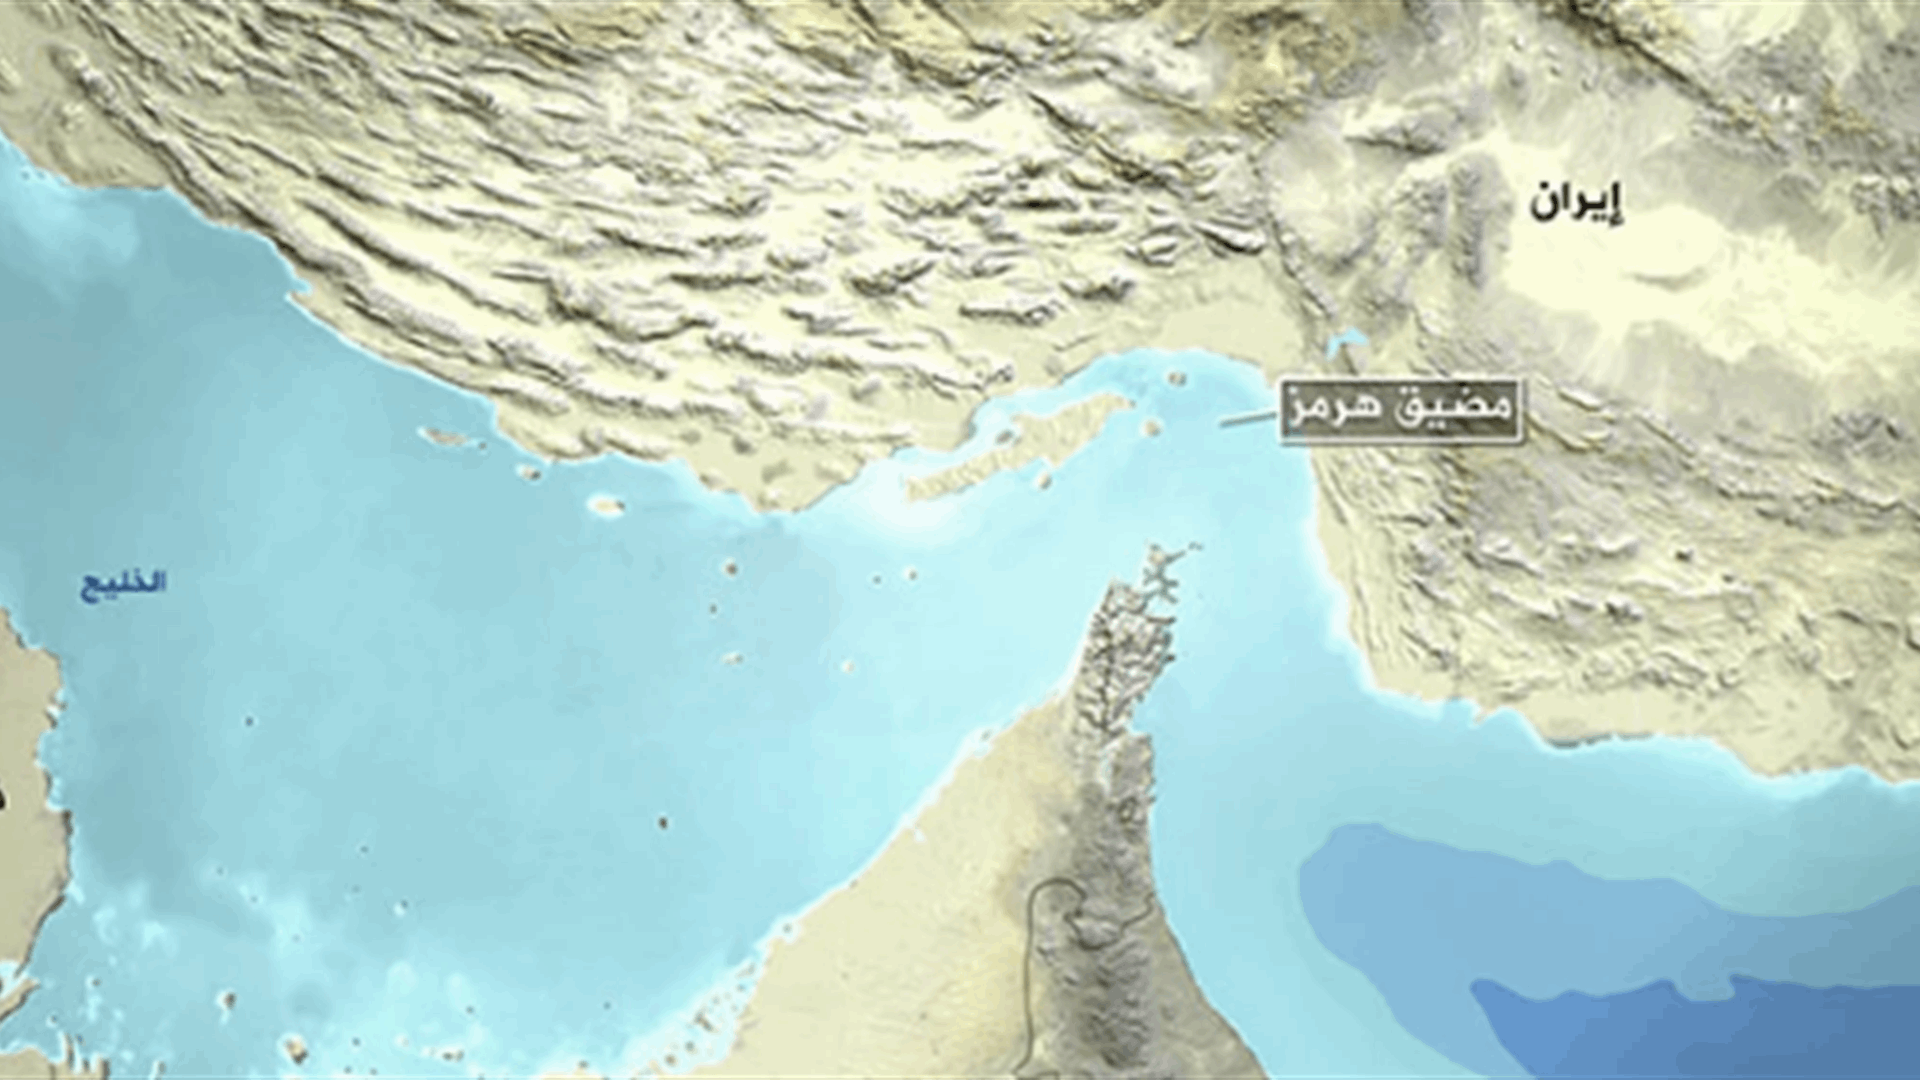 تحذيرات غربية للسفن من الاقتراب من المياه الإيرانية في مضيق هرمز    